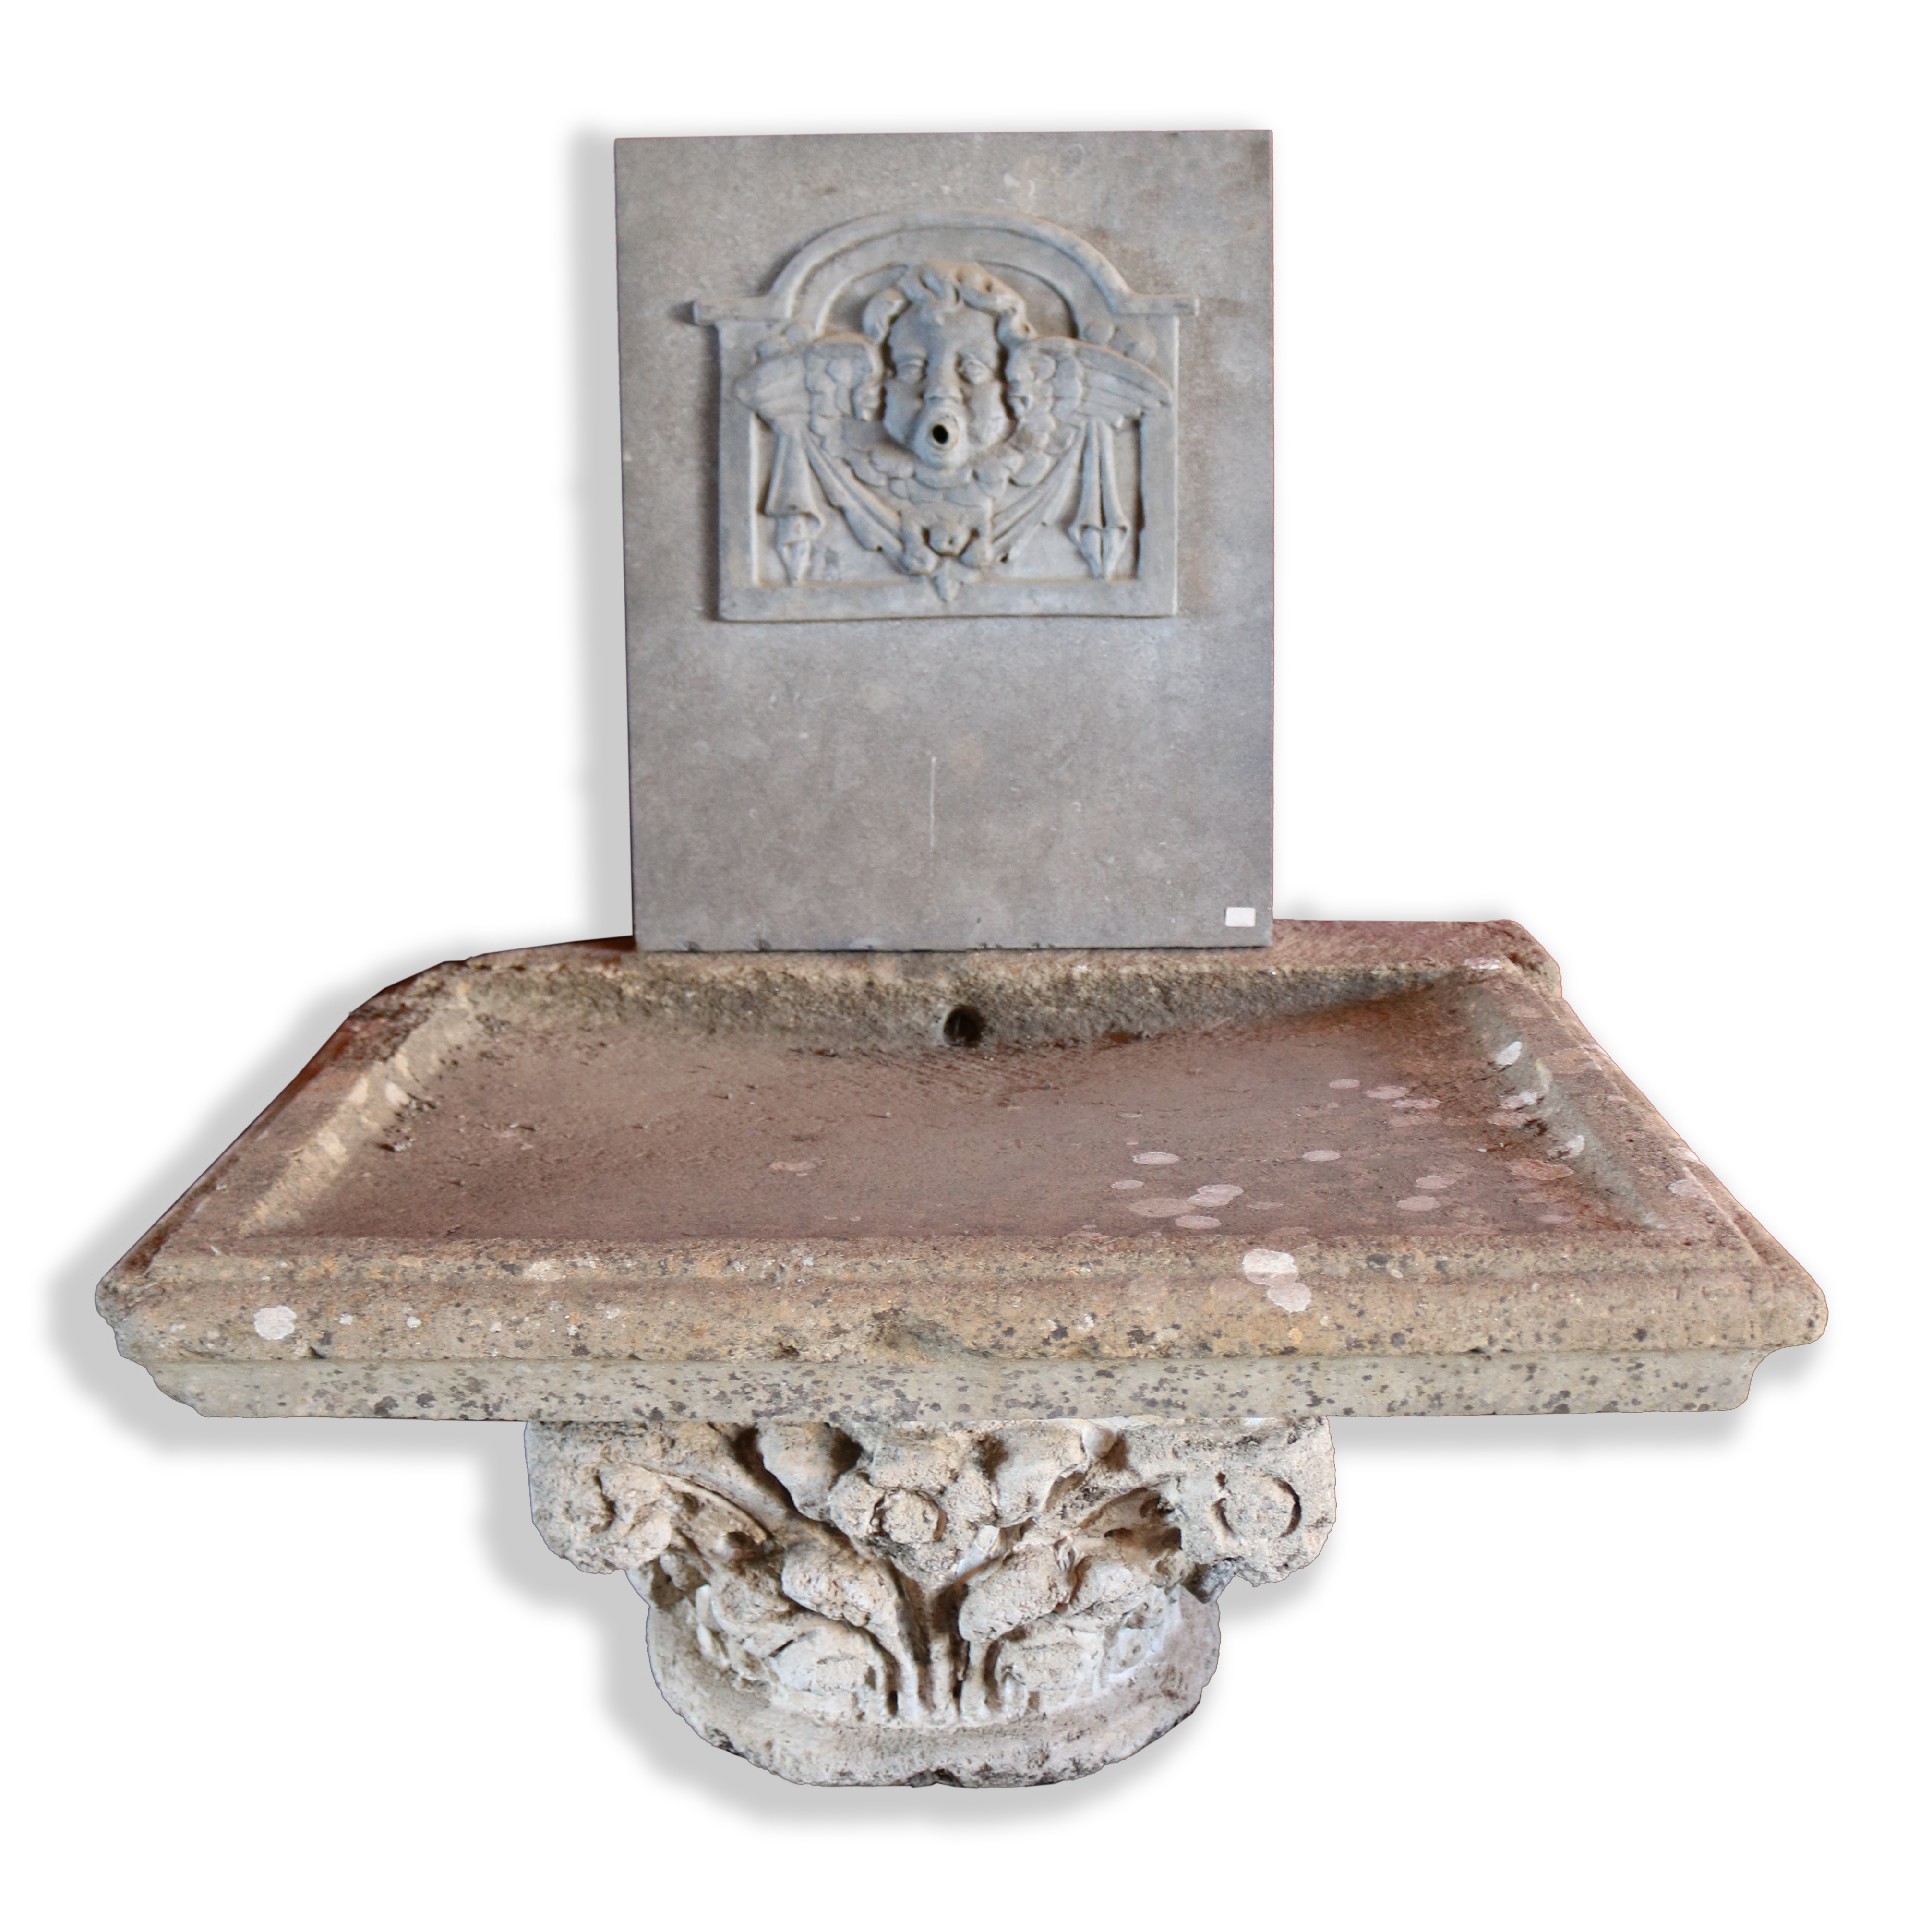 Antica fontana da muro in pietra. - Fontane Antiche - Arredo Giardino - Prodotti - Antichità Fiorillo